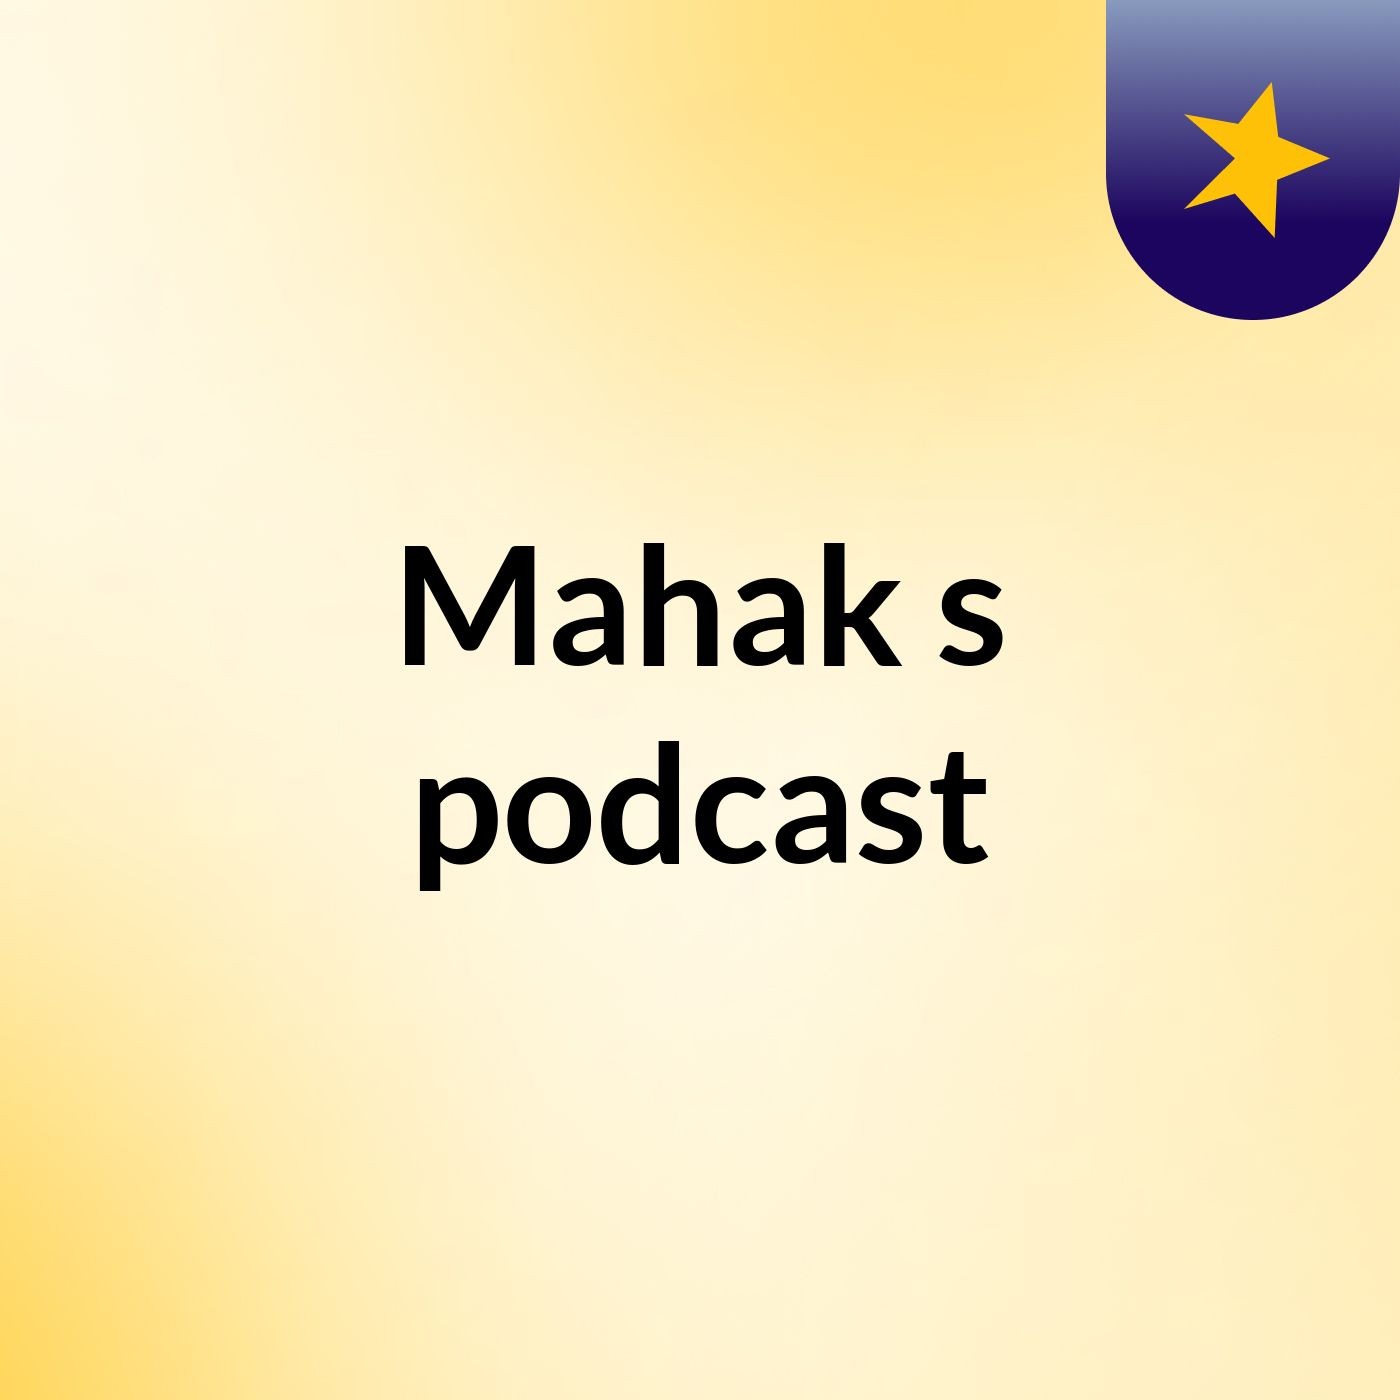 Mahak's podcast